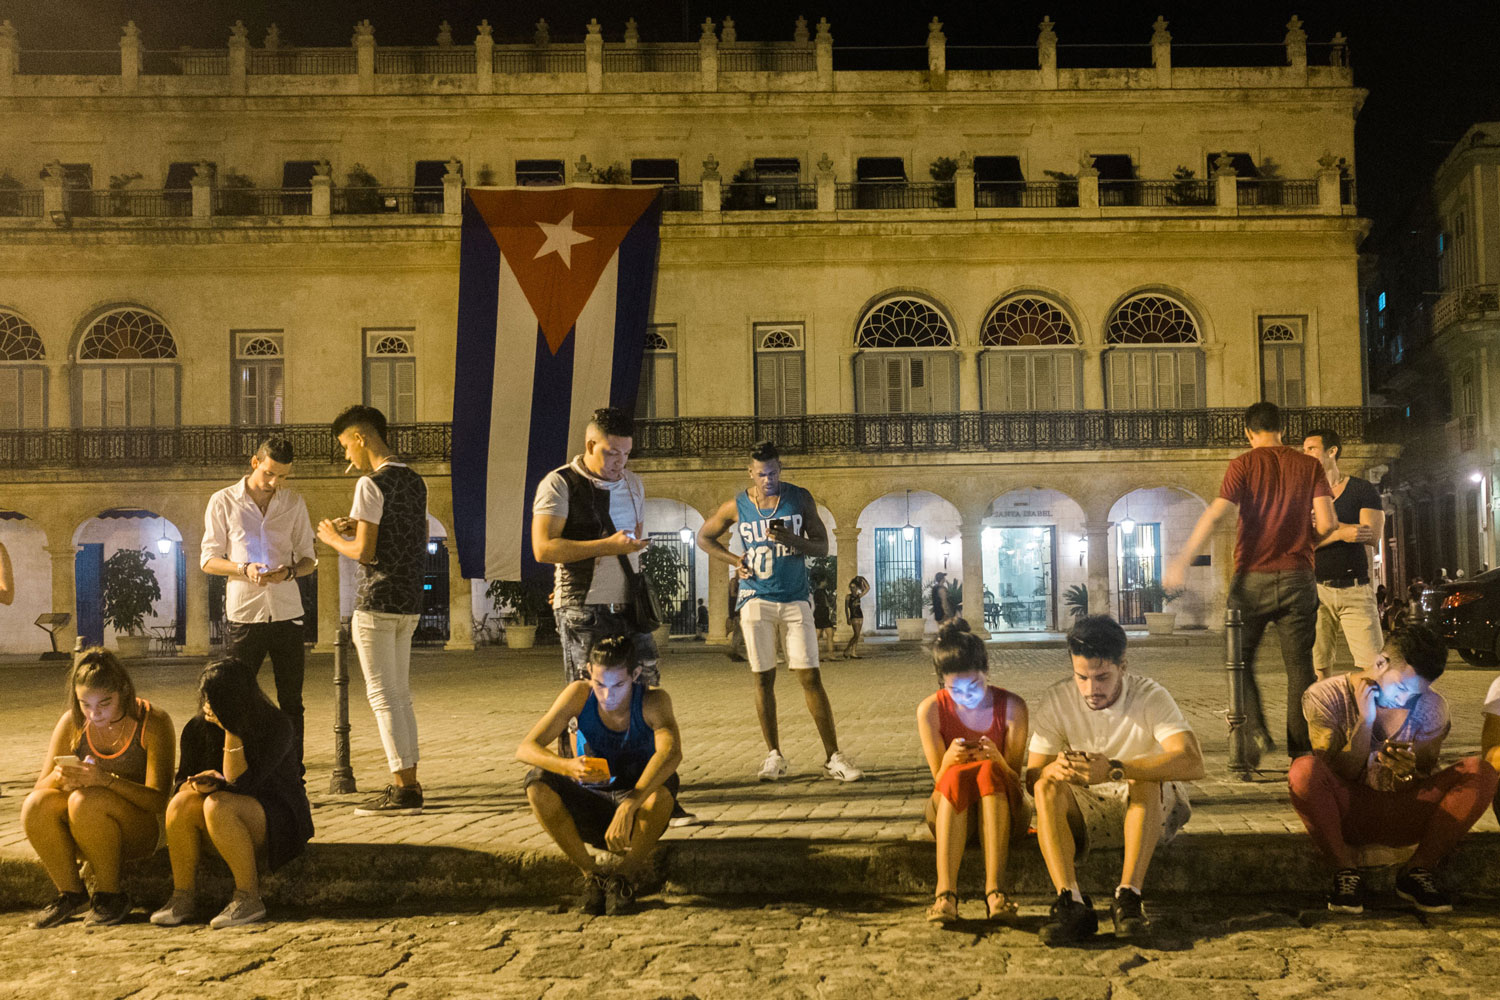 مردم کوبا در حال تلاش برای وصل شدن به اینترنت از طریق تلفن همراه